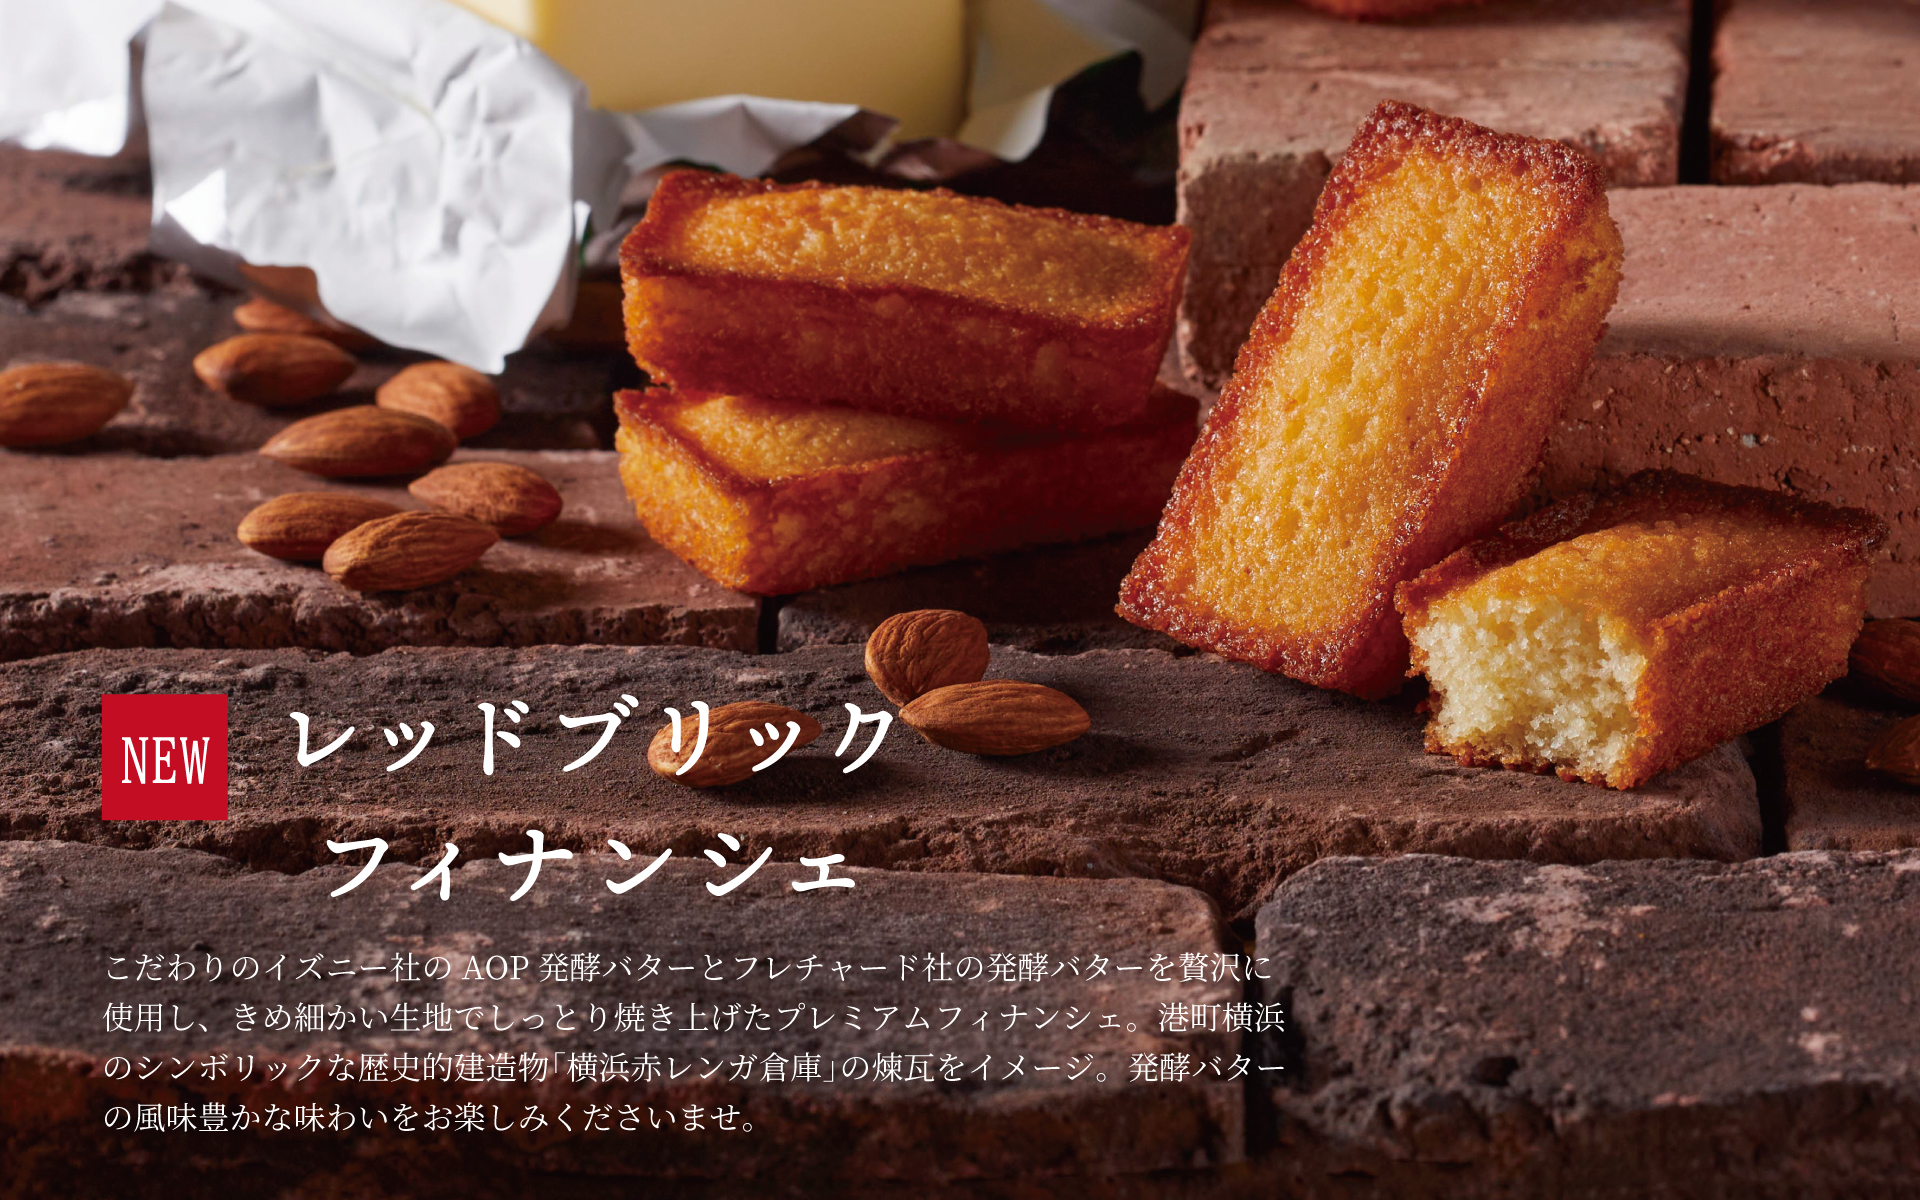 RED BRICK FIINANCIER こだわりのイズニー社のAOP発酵バターとフレチャード社の発酵バターを贅沢に使用し、きめ細かい生地でしっとり焼き上げたプレミアムフィナンシェ。港町横浜のシンボリックな歴史的建造物「横浜赤レンガ倉庫」の煉瓦をイメージ。発酵バターの風味豊かな味わいをお楽しみくださいませ。